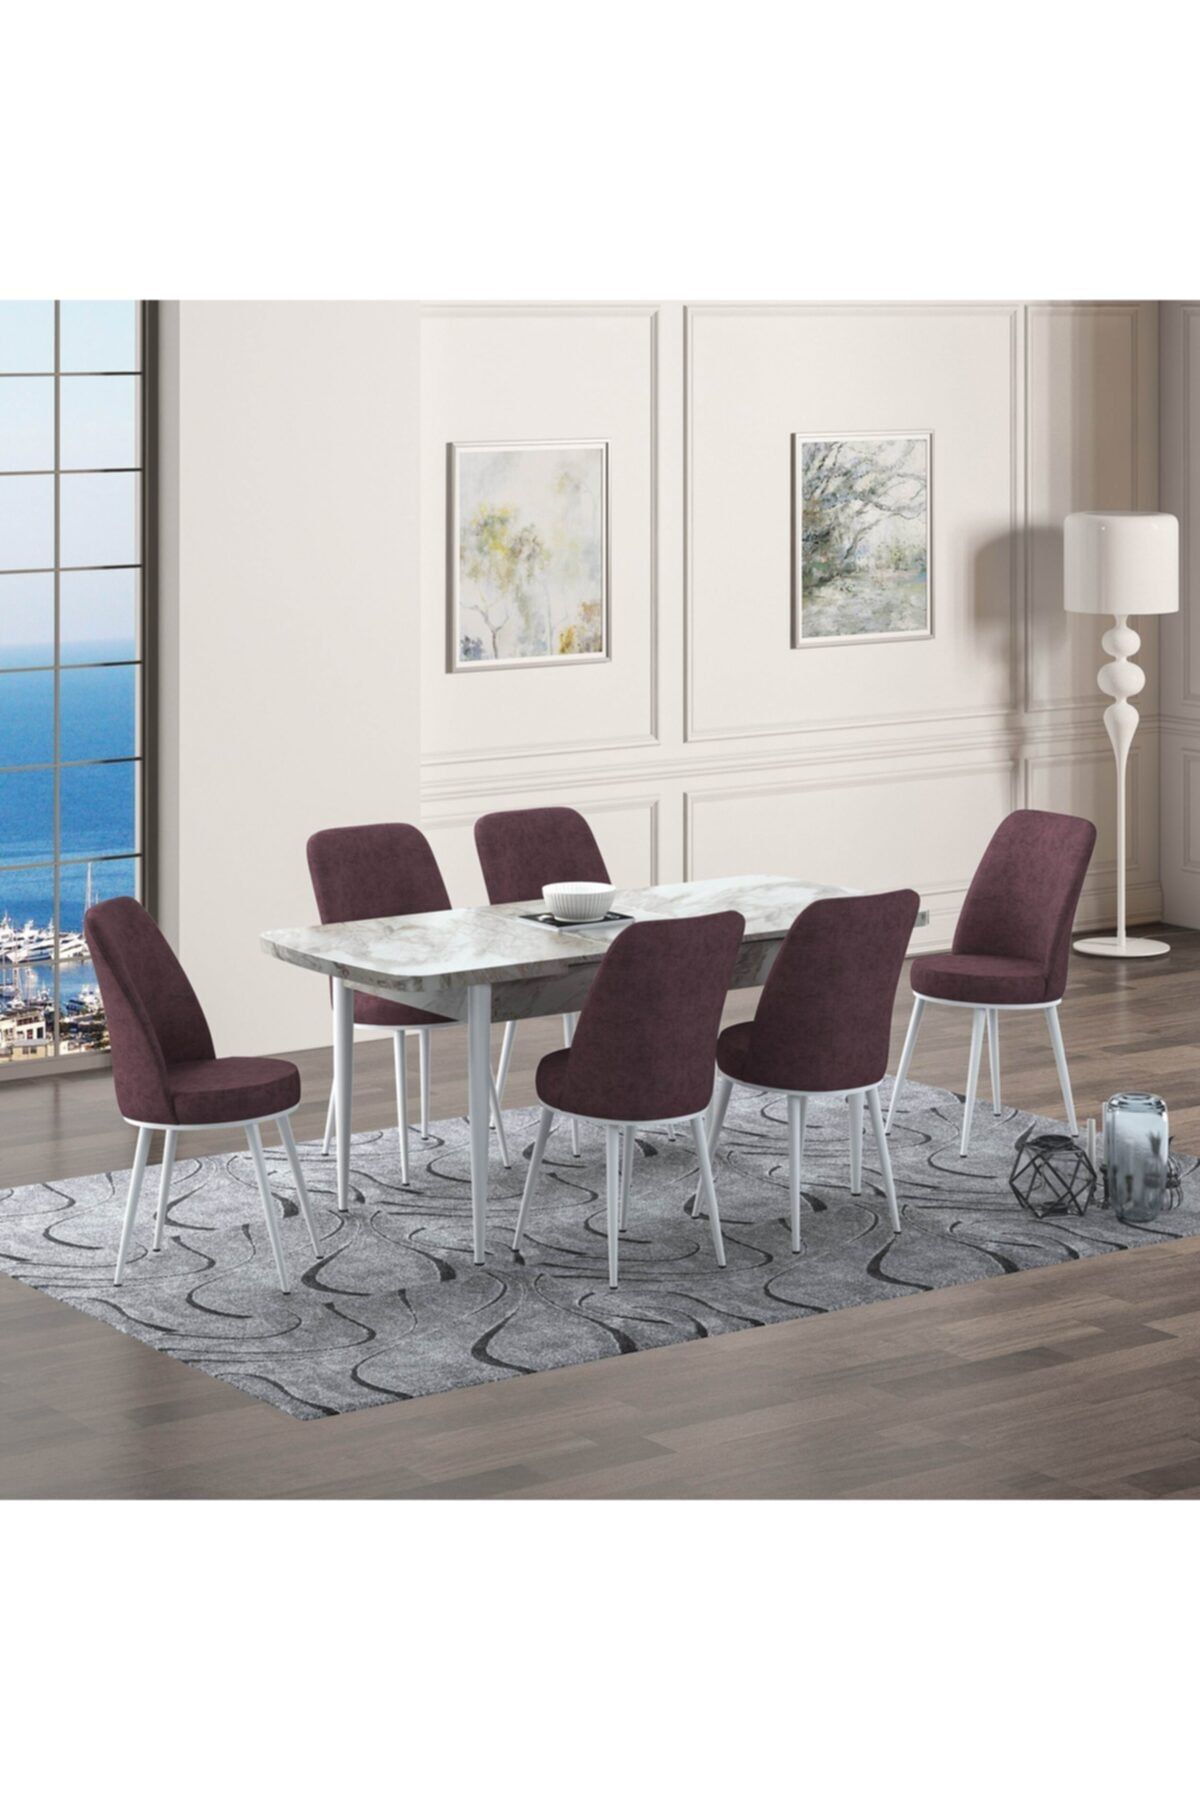 GÜVEN MASA SANDALYE 6 Sandalyeli Efes Mermer Modeli Yemek Masası Ve Oval Gold Gül Kurusu Renk Sandalye Takımı Takımı